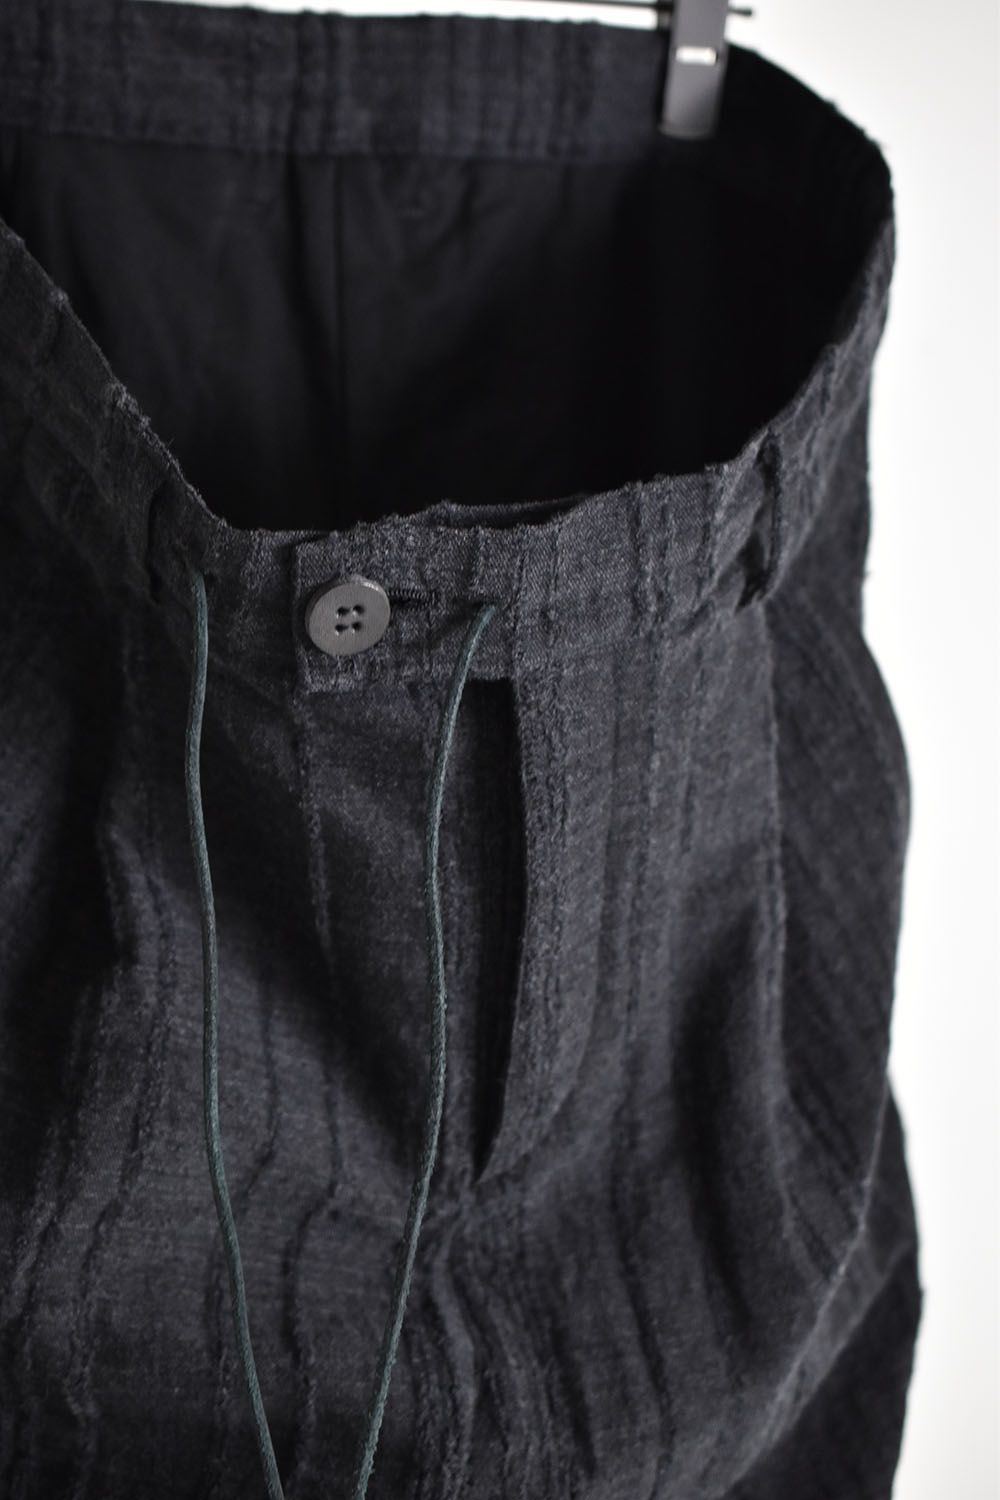 Wool Rayon Jacquard strap Layered cropped pants"Charcoal"/ウール×レーヨン破れジャガードストライプレイヤードクロップドパンツ